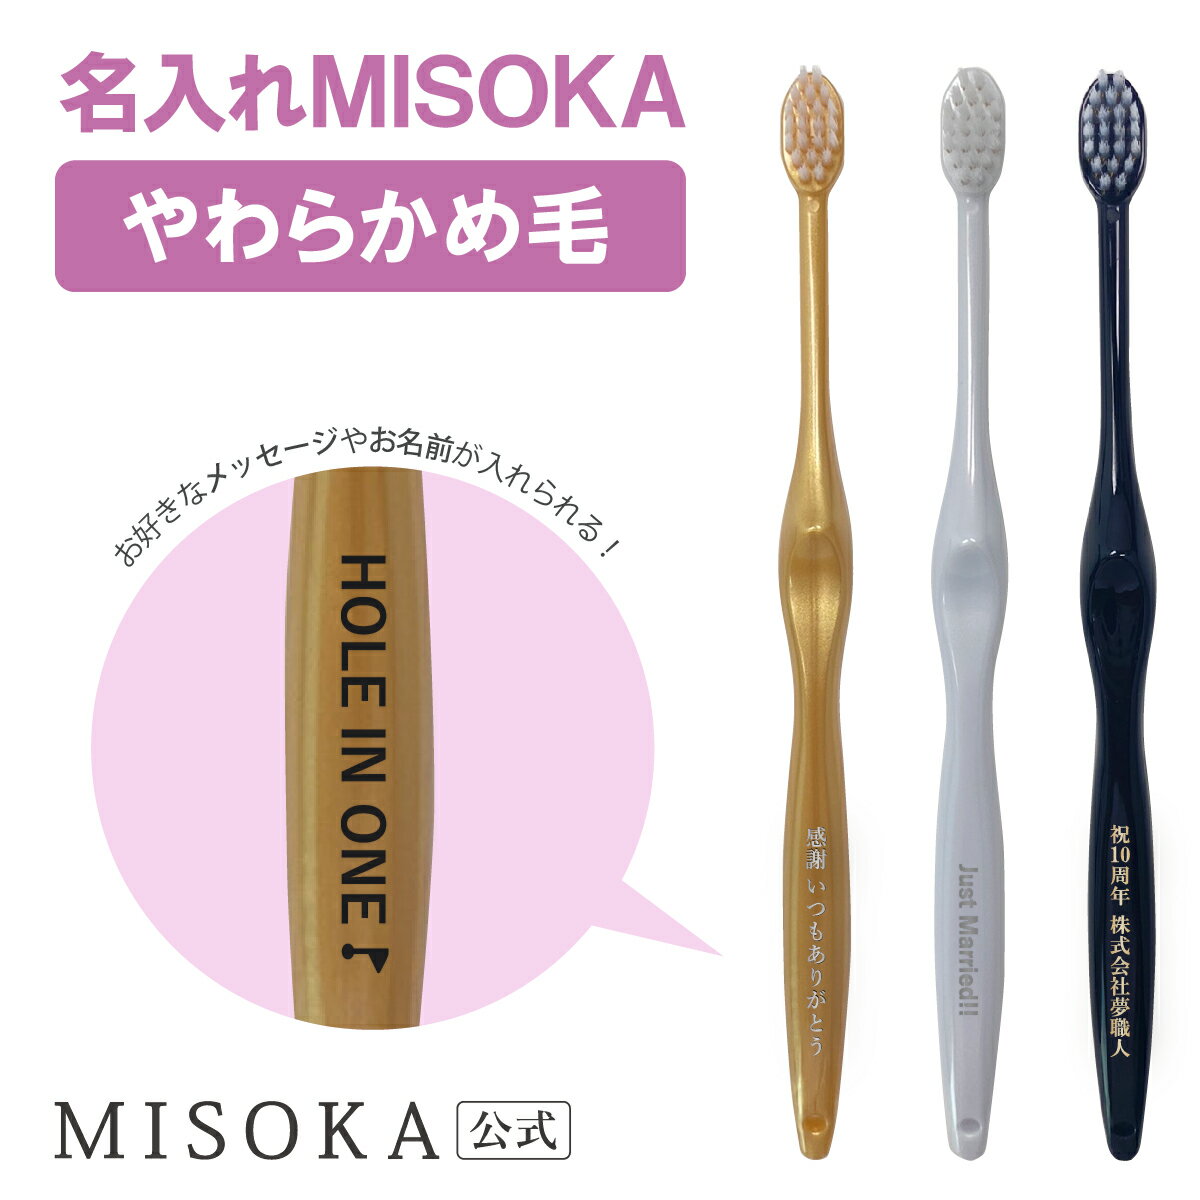 MISOKA(ミソカ) 名入れ やわらかめ毛 オリジナル 歯ブラシ 限定 ギフト お祝い ツルツル 衛生的な工場直営店から直送 テレビで紹介 世界のセレブが お取り寄せ 包装済 各種熨斗対応可 　 日本製